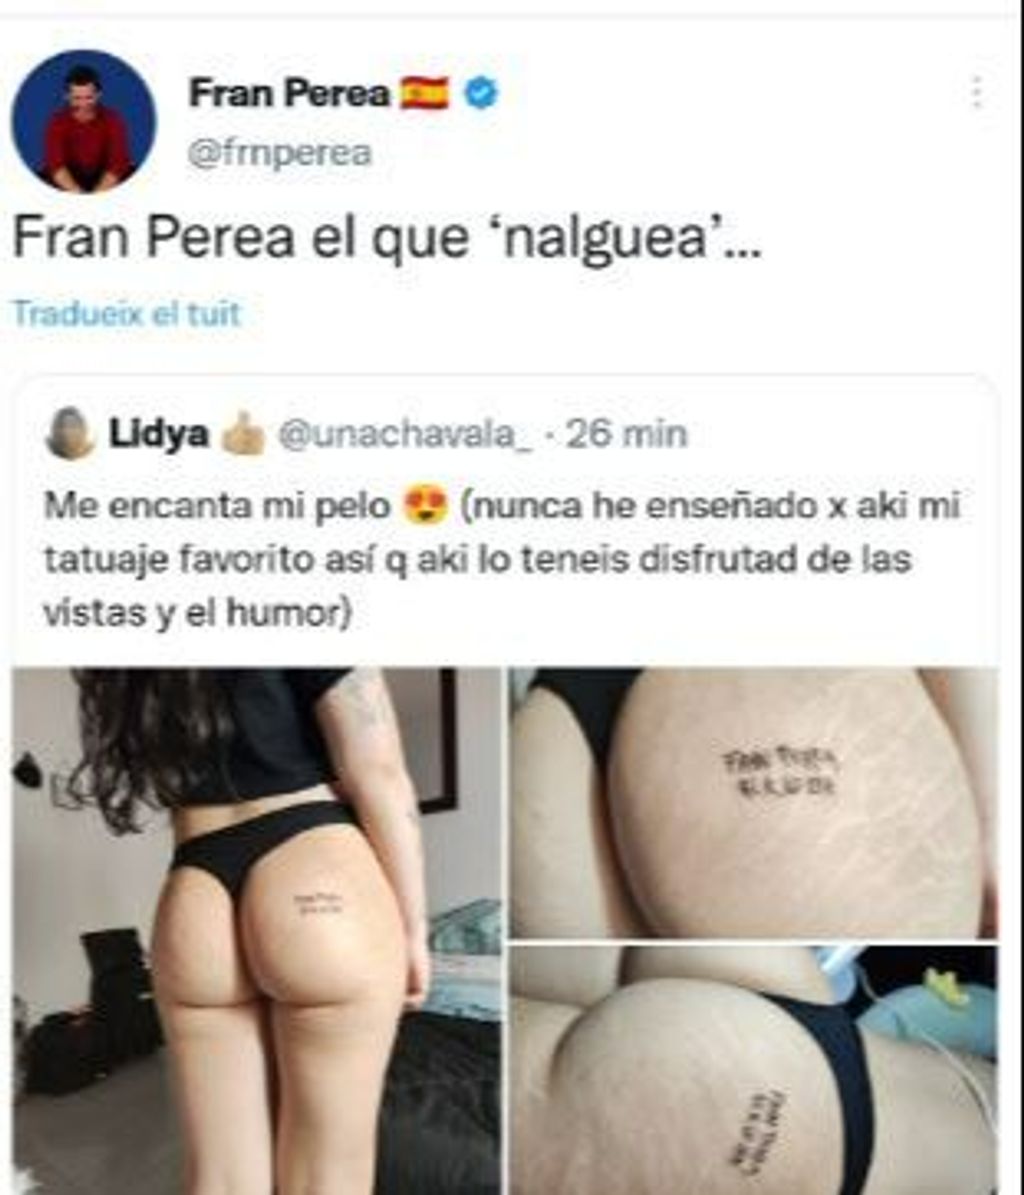 La reacción de Fran Perea al ver el curioso lugar en el que una chica se ha tatuado su nombre